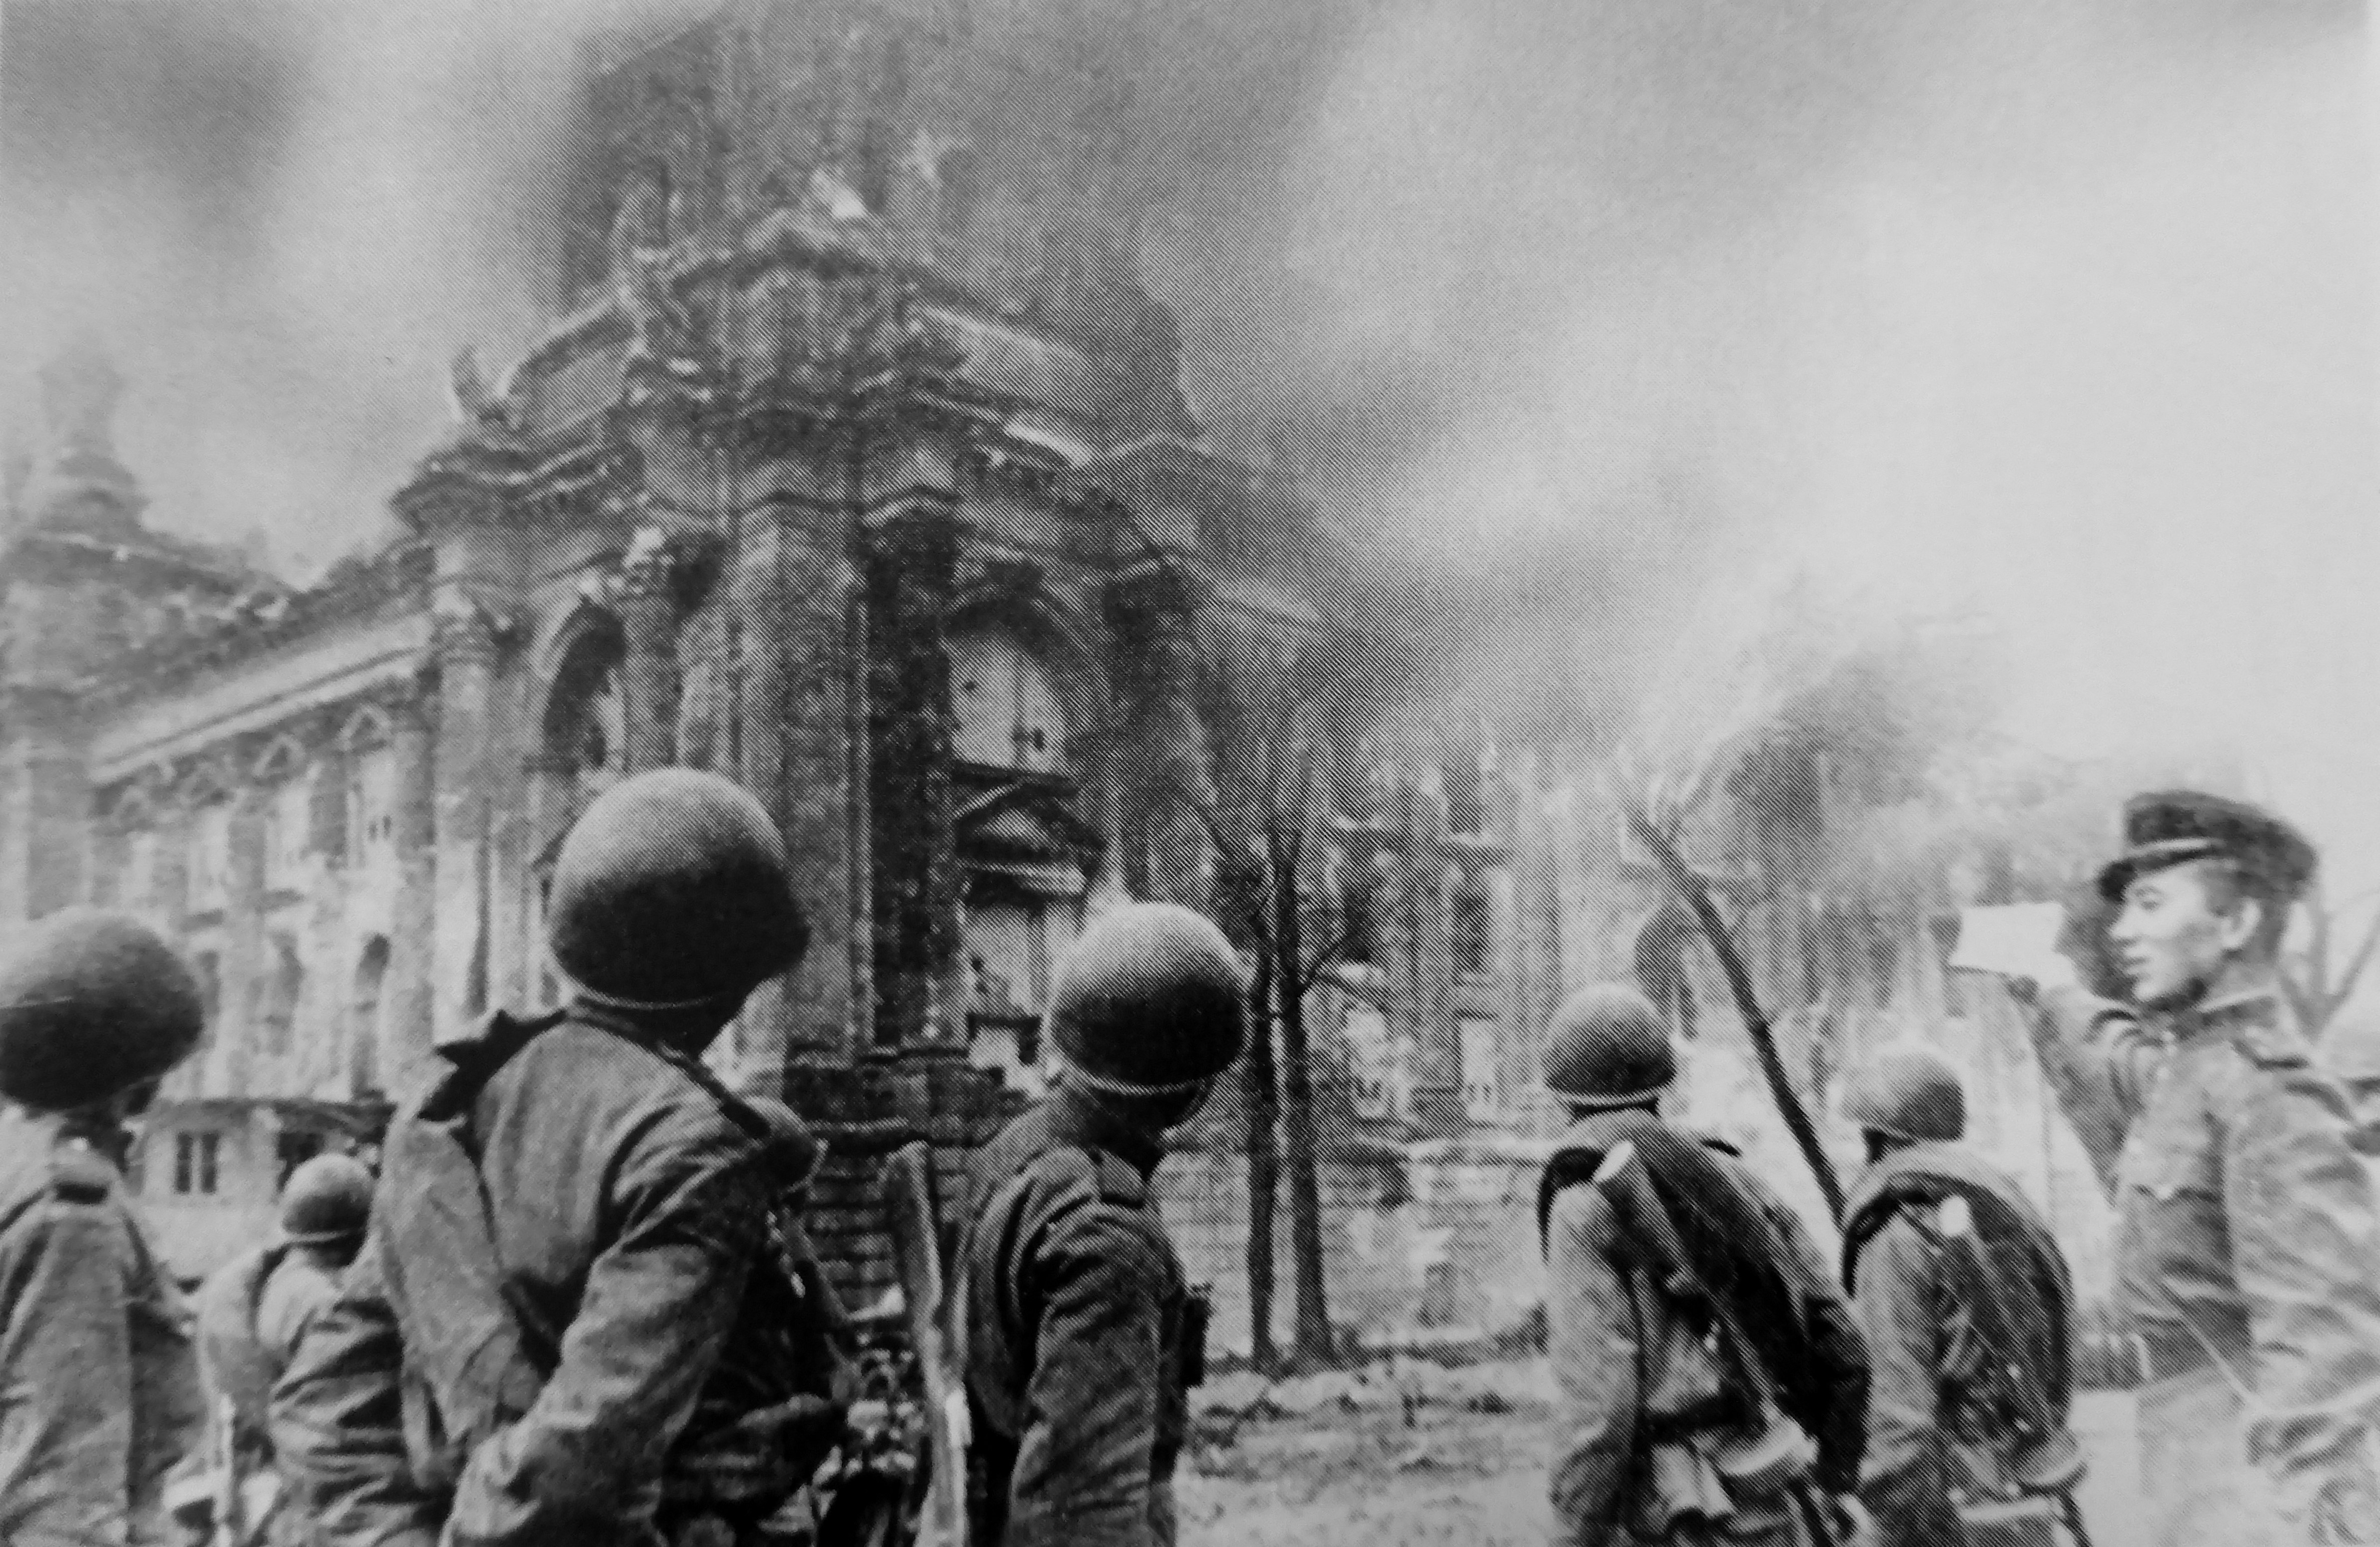 Берлин 5 мая какой год. Битва за Берлин штурм Рейхстага. Рейхстаг в Берлине 1945. Май 1945 взятие Берлина.